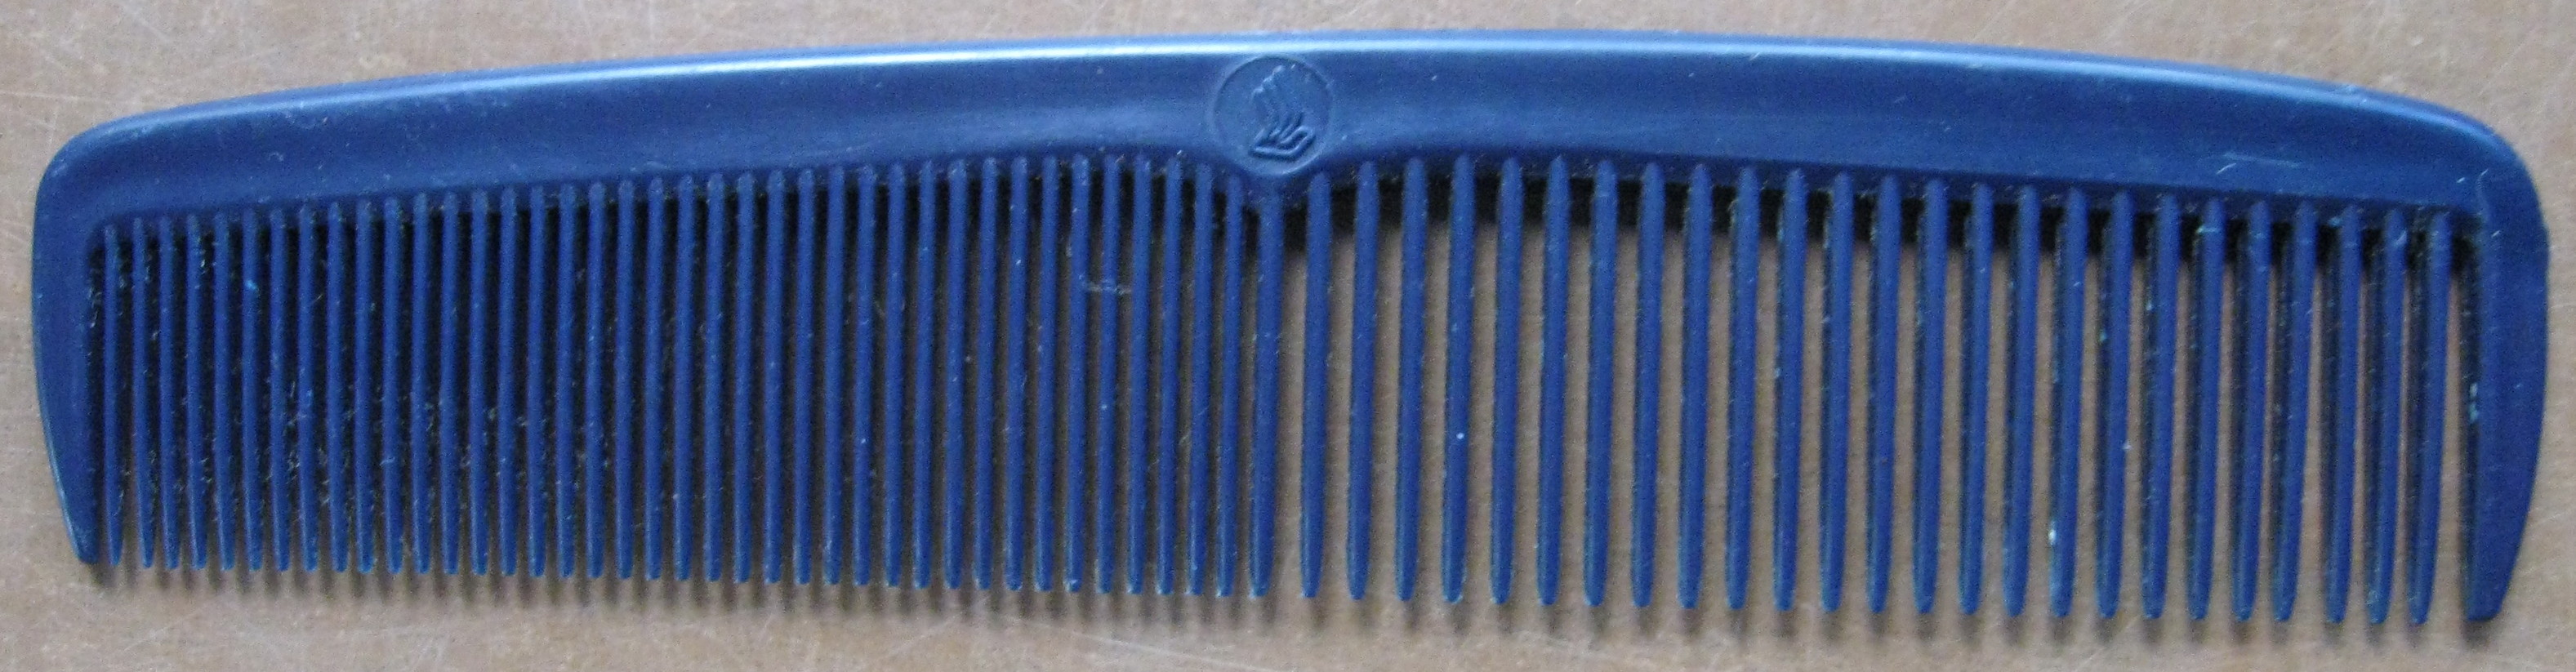 Black comb